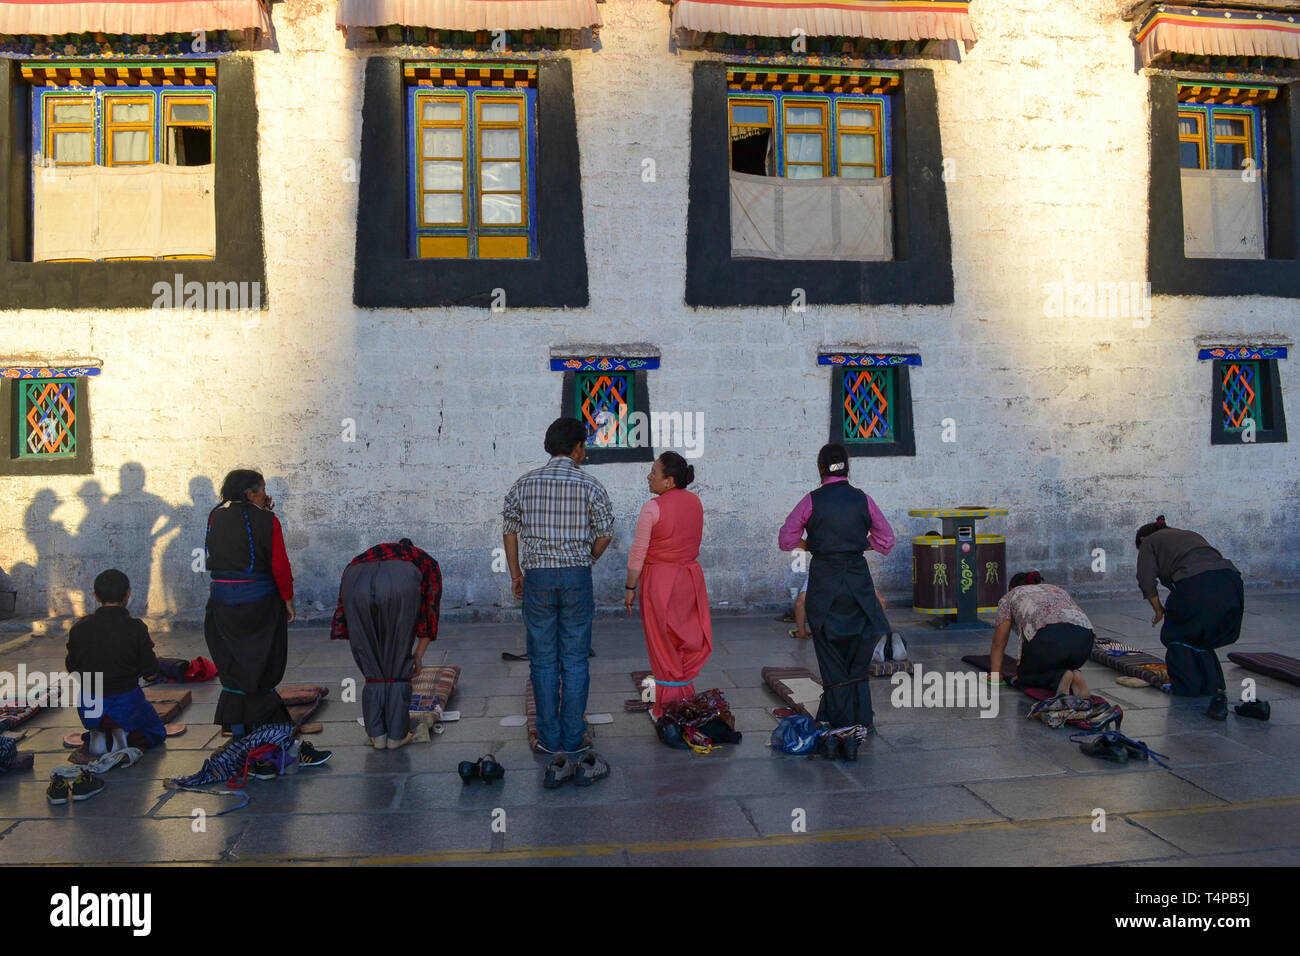 Los peregrinos orando afuera del Templo de Jokhang, el templo más sagrado del budismo tibetano en Lhasa, Tibet Foto de stock